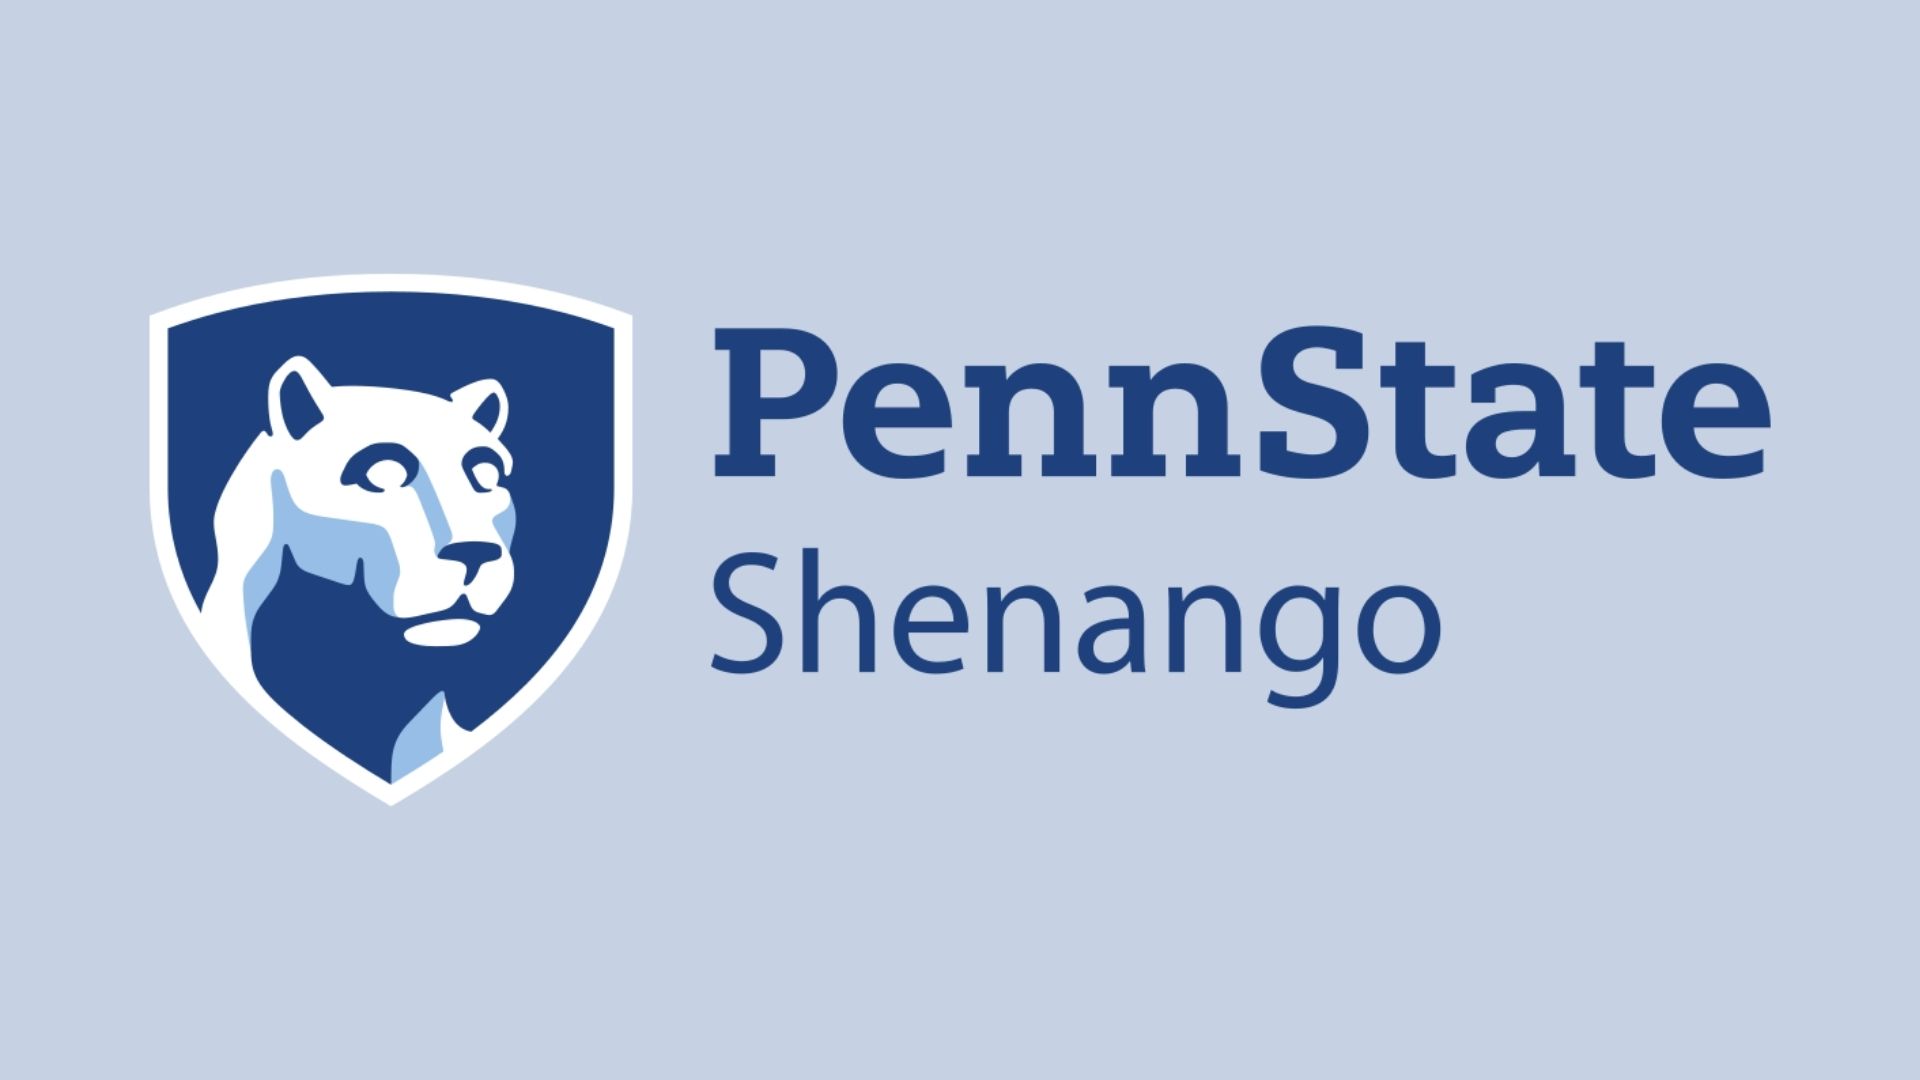 Penn State Shenango